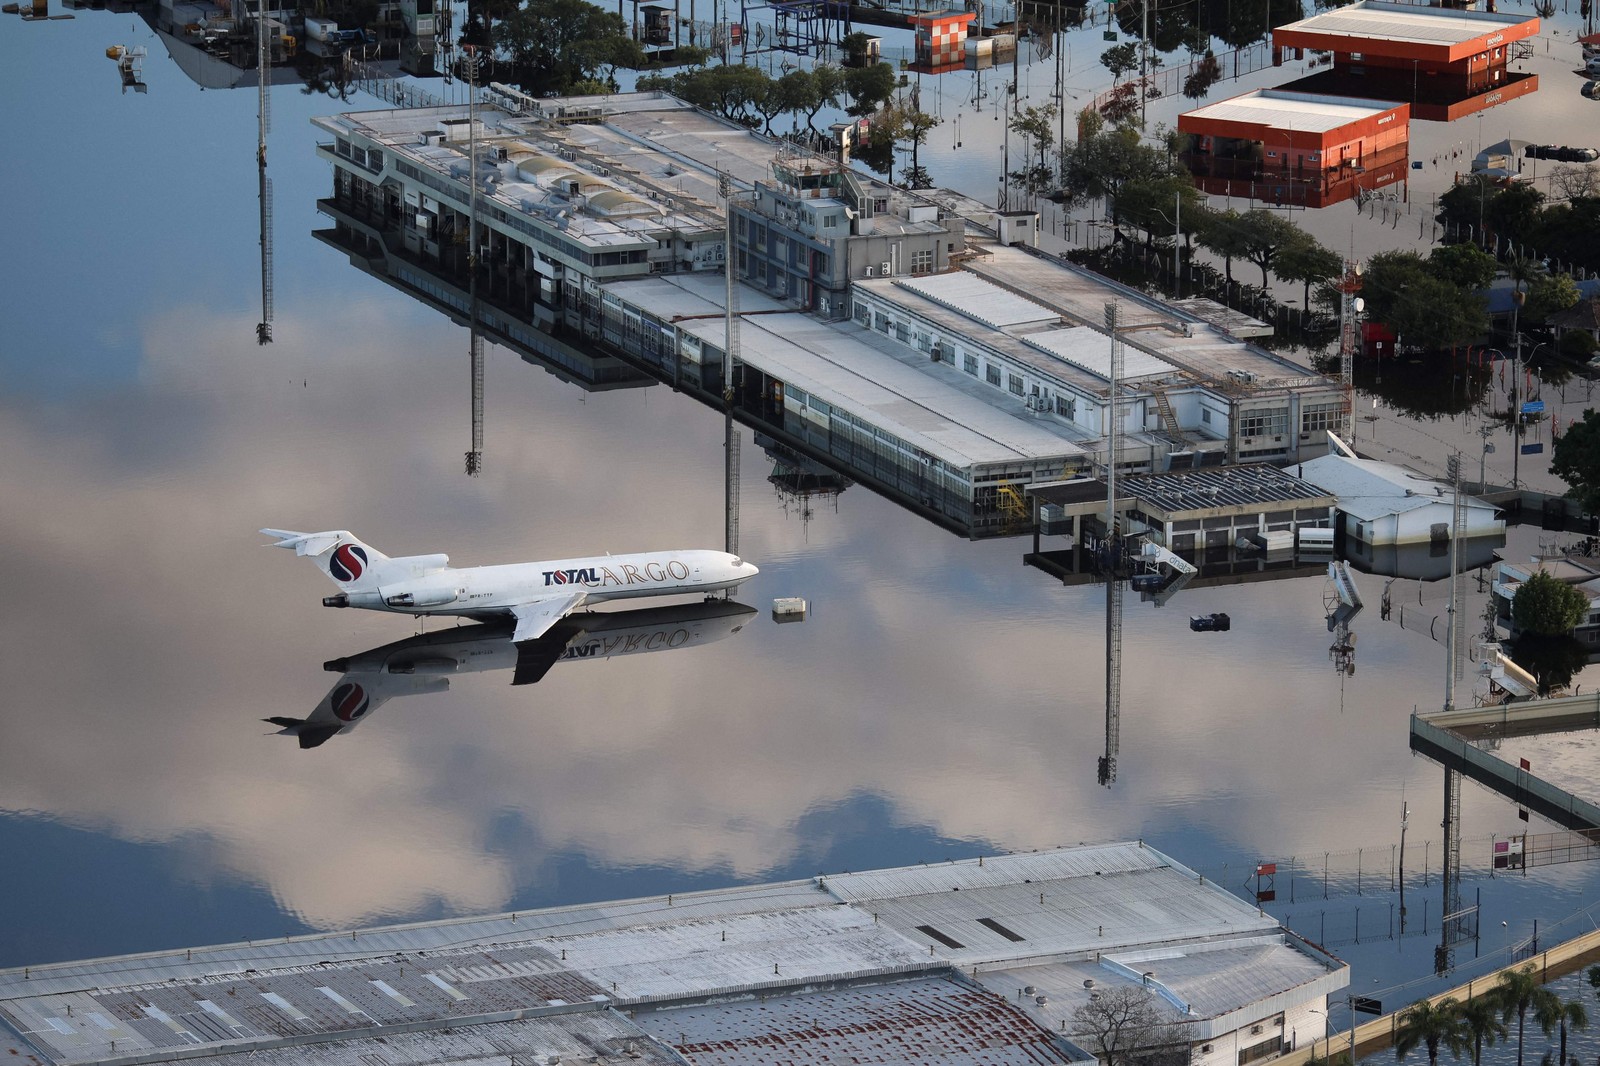 Uma vista aérea mostra a pista inundada do Aeroporto Internacional Salgado Filho, na cidade de Porto Alegre, Rio Grande do Sul, Brasil — Foto: Anselmo Cunha / AFP